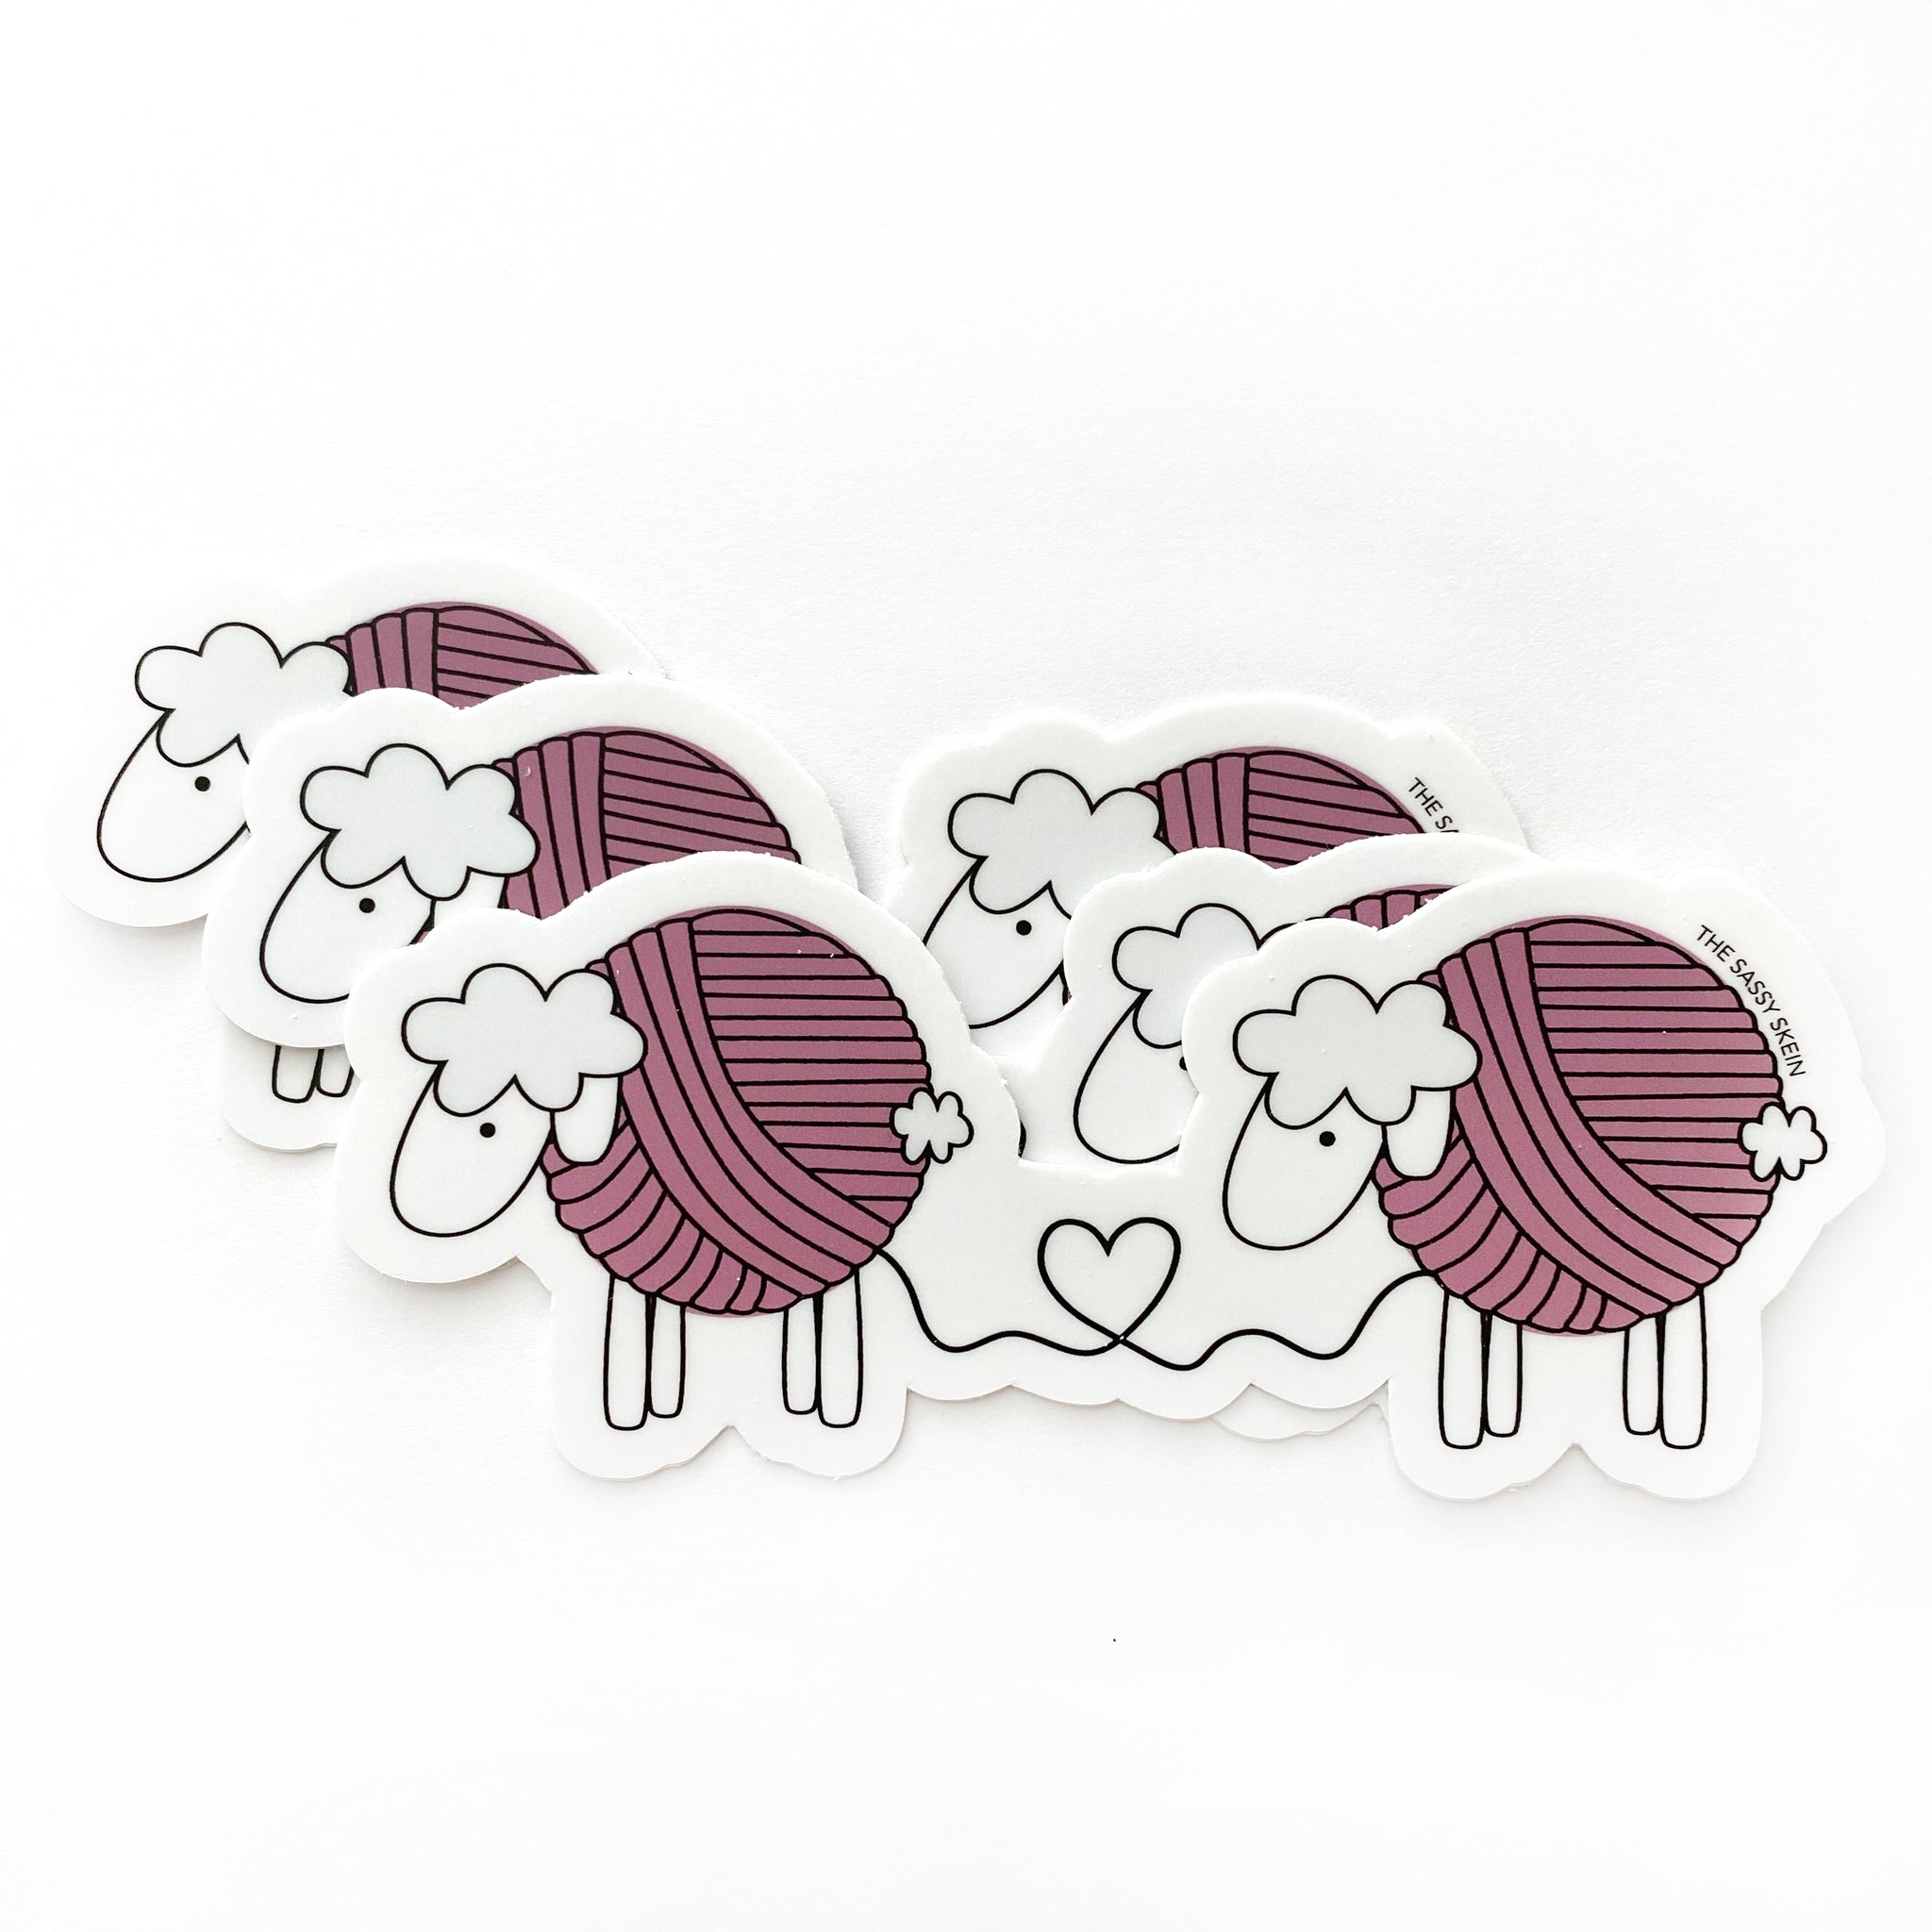 Yarn Sheep Sticker